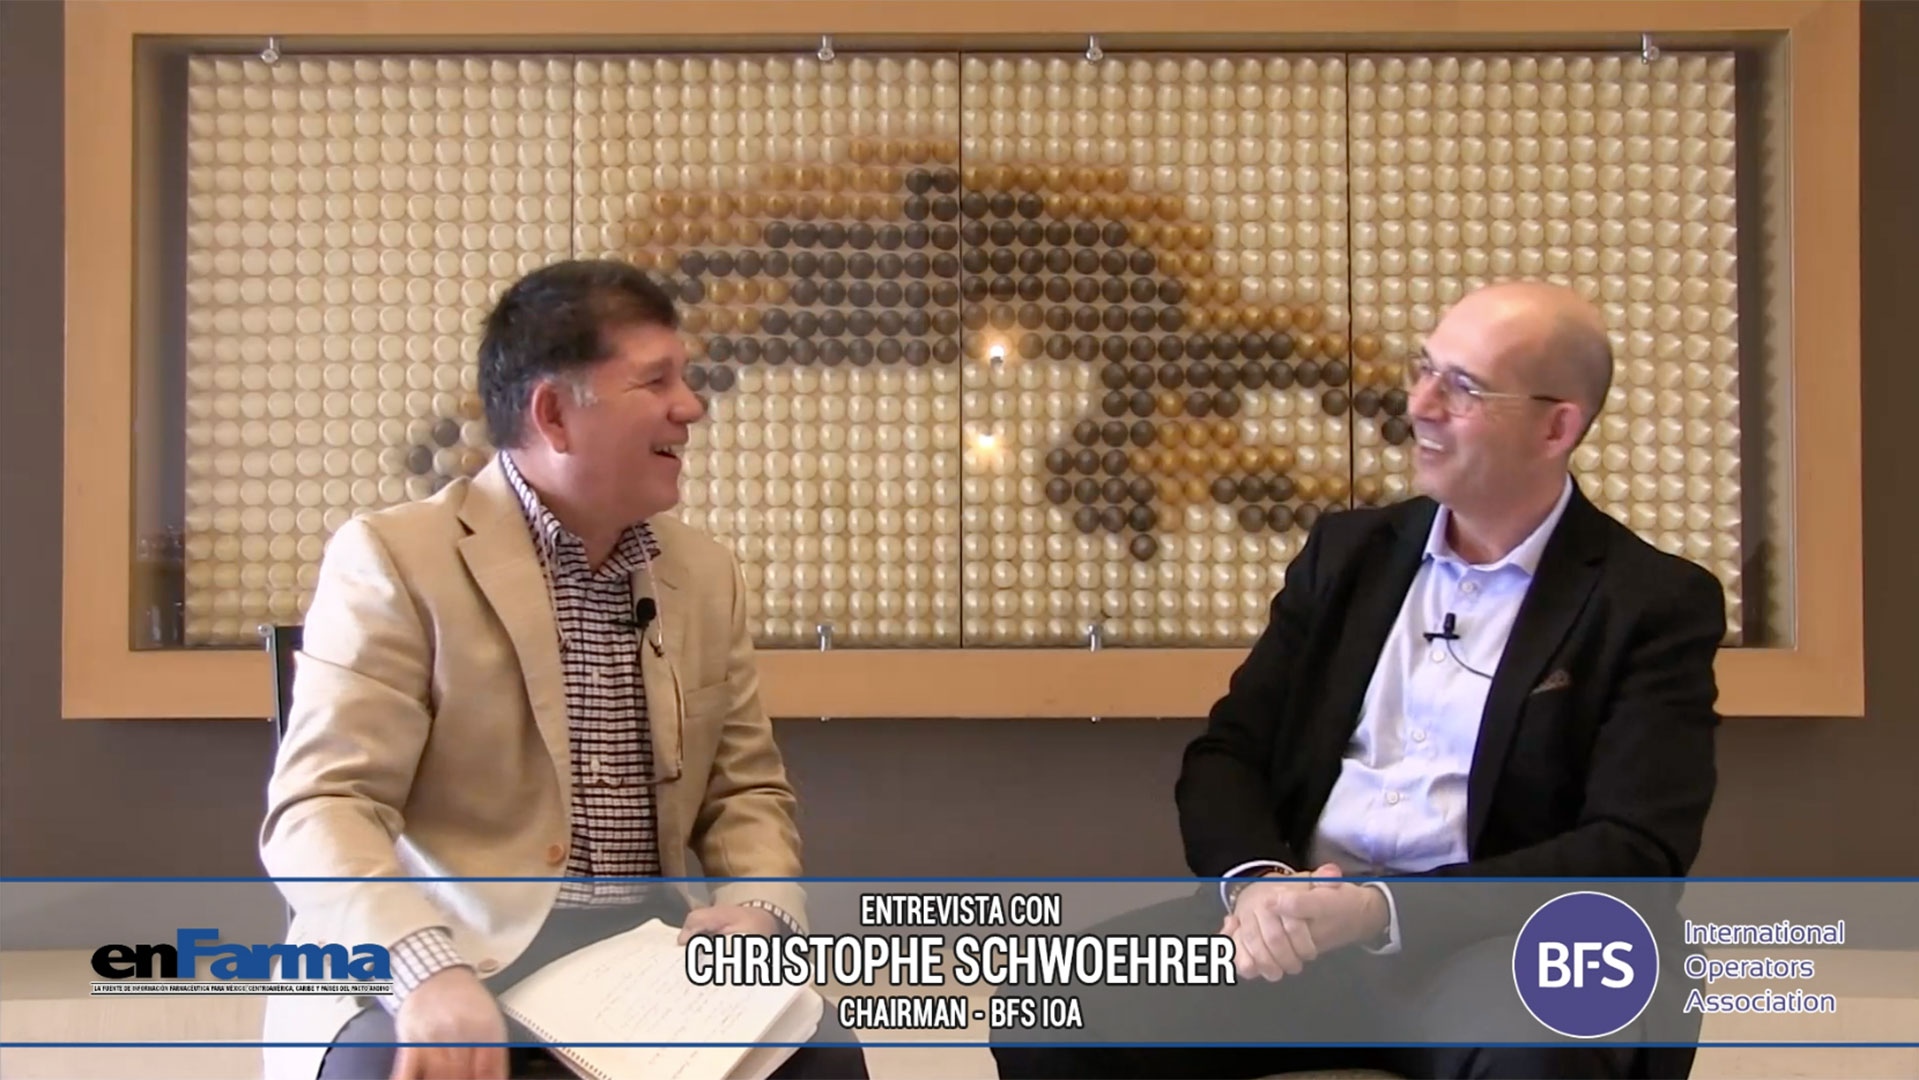 Entrevista a Christophe Schwoehrer - Chairman BFS International Operators Association